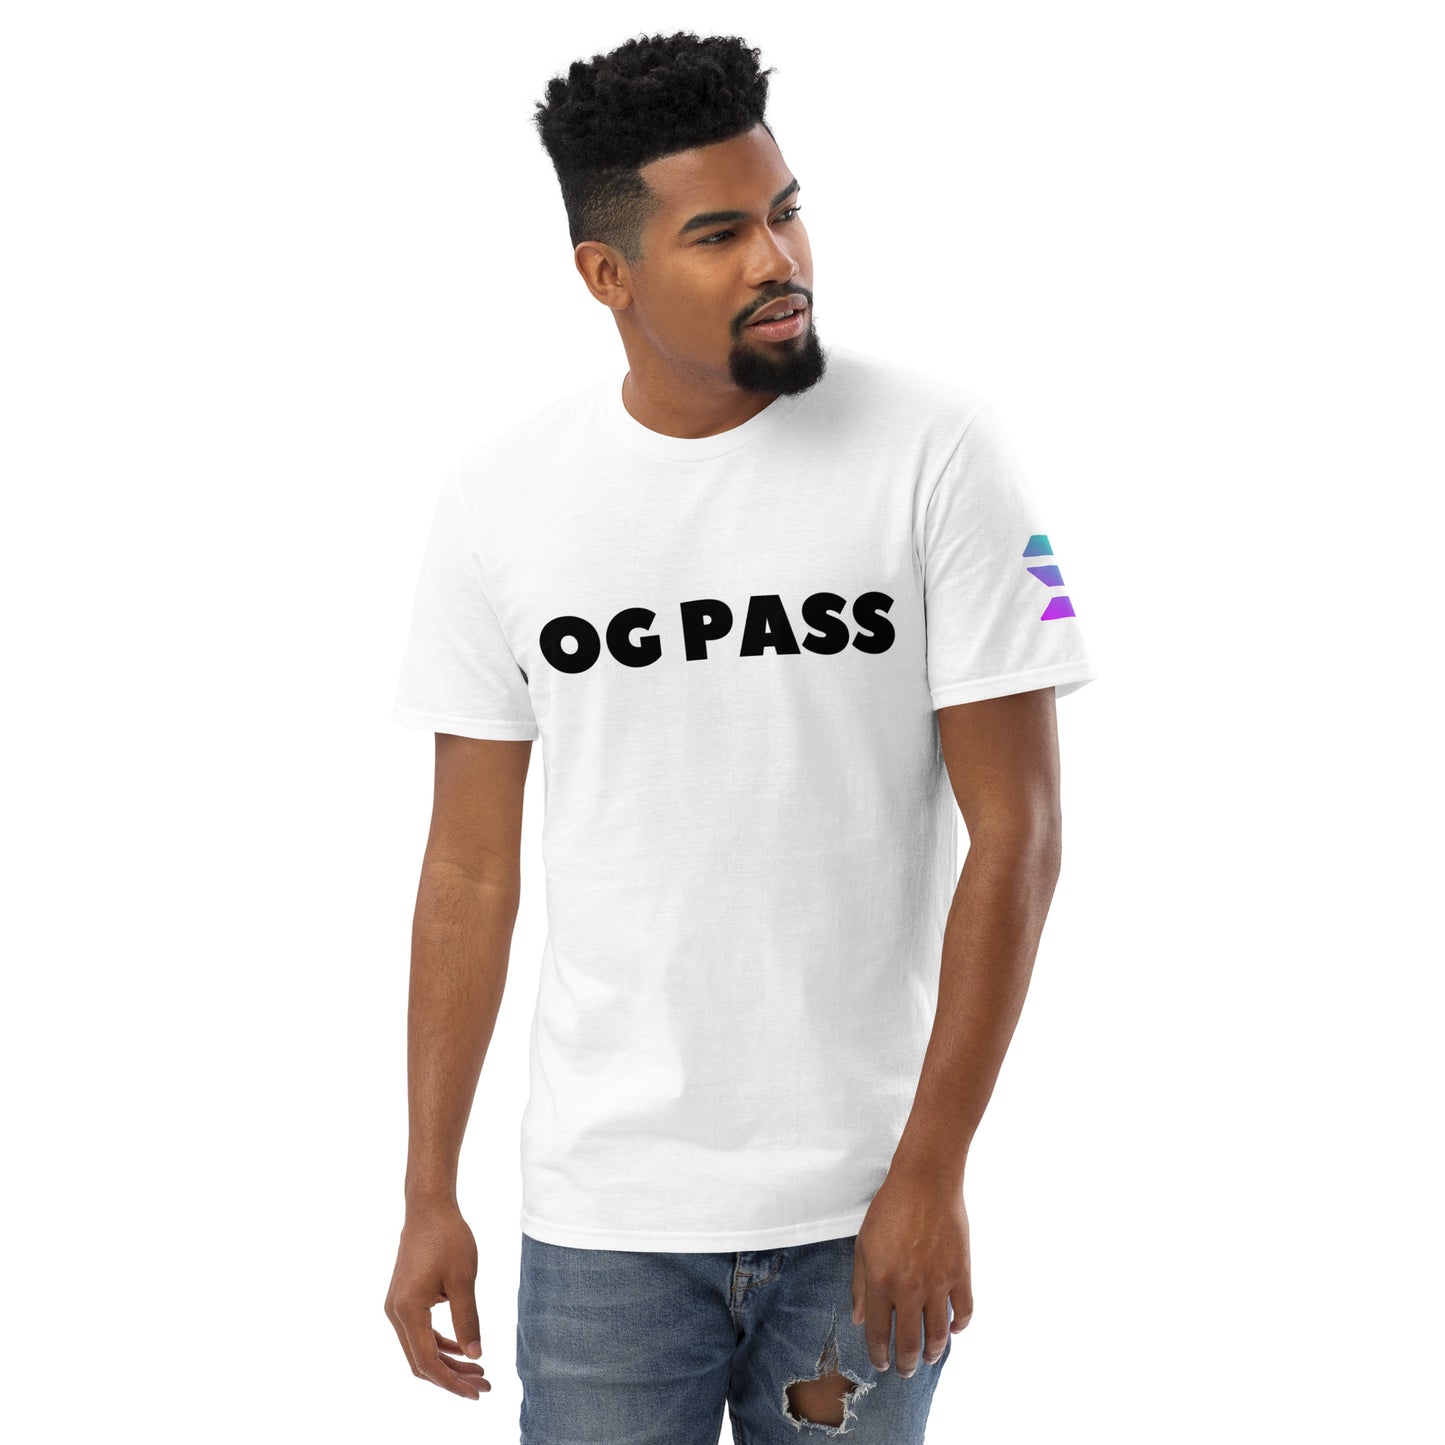 Camiseta OG PASS